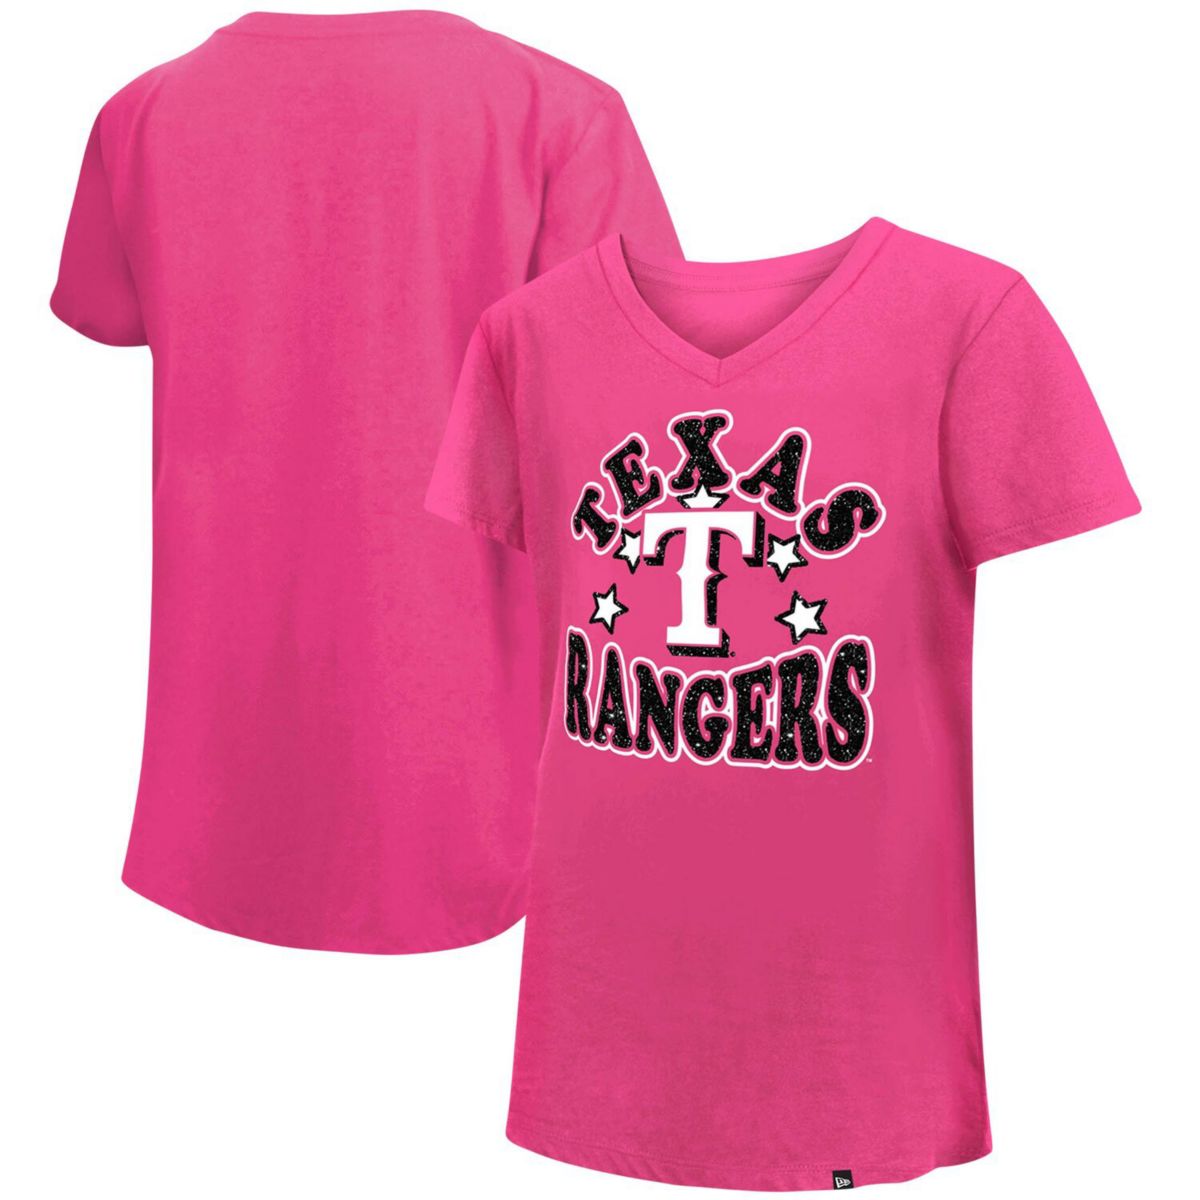 Розовая футболка с V-образным вырезом и звездами из джерси Texas Rangers New Era для девочек New Era